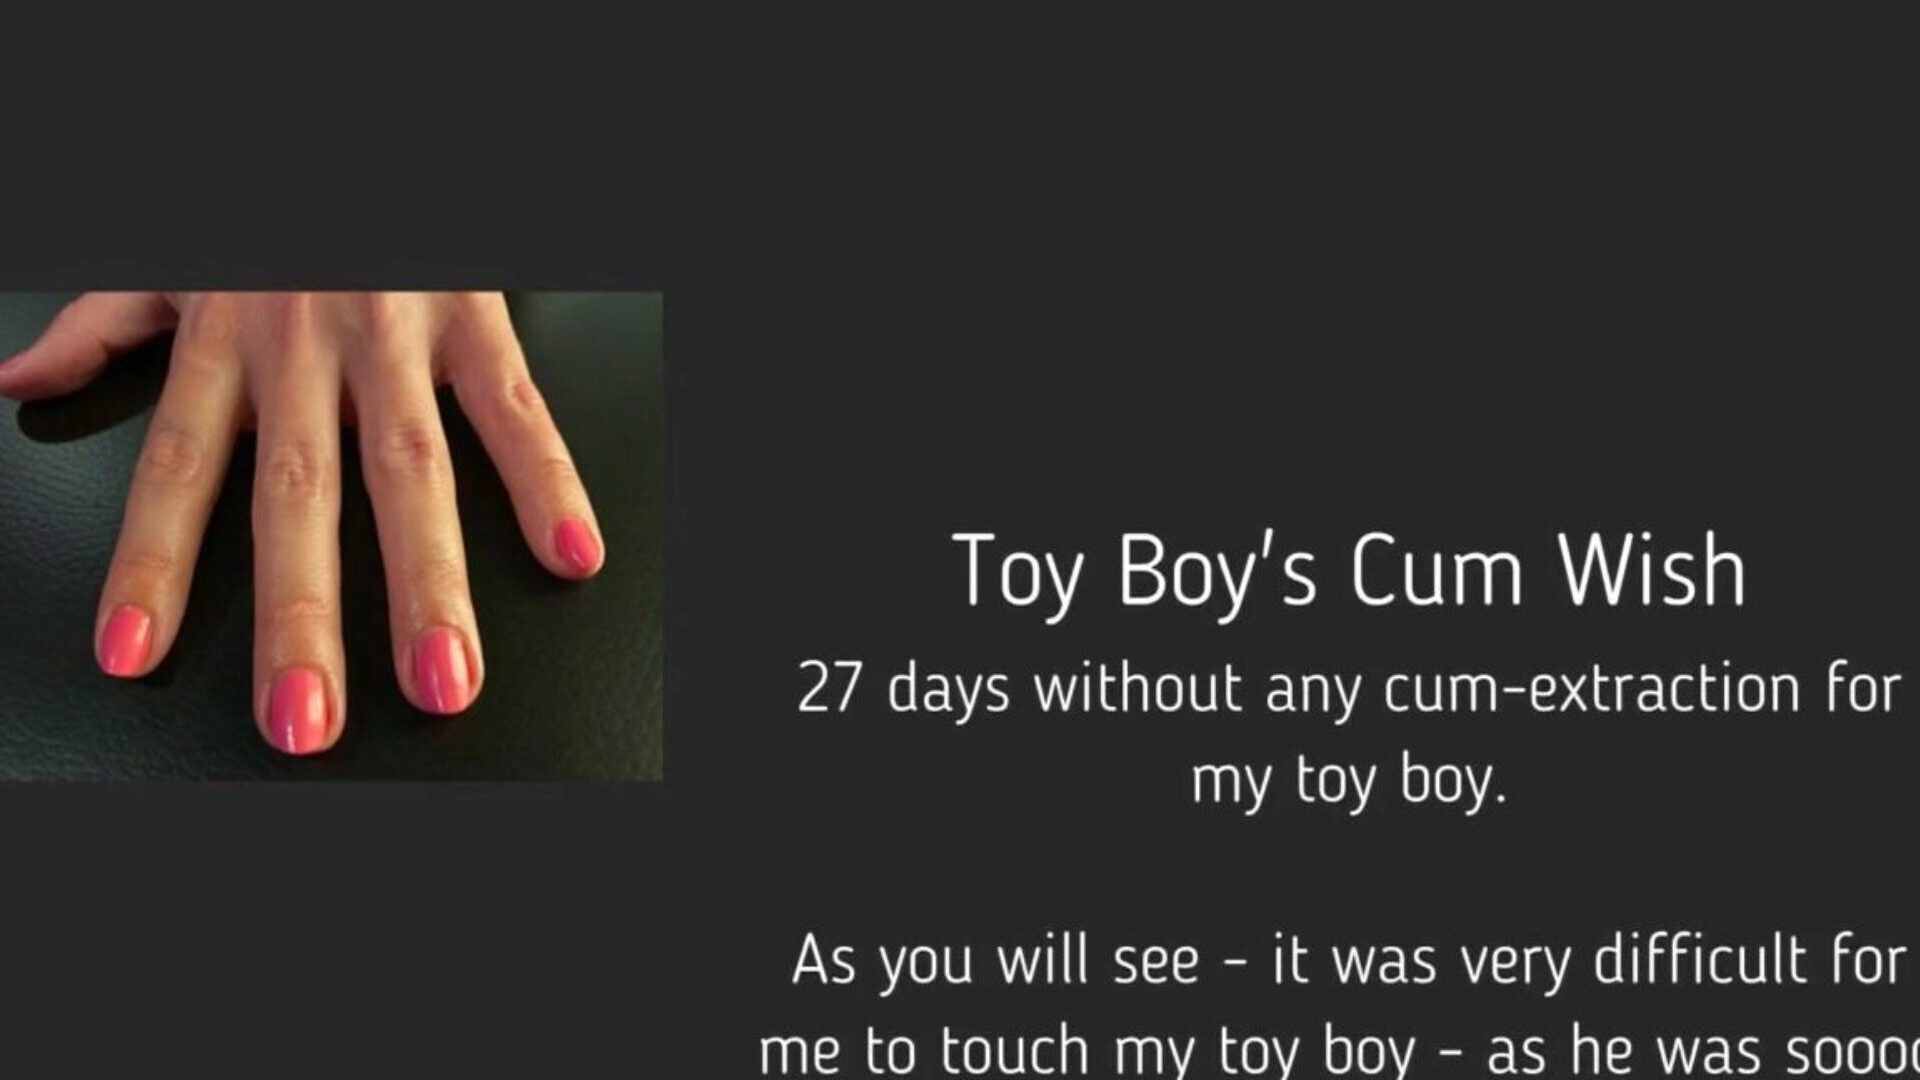 toy boy's cum wish: free femdom handjob hd porn video 95 Παρακολουθήστε το παιχνίδι boy cum cum wish tube lovemaking επεισόδιο δωρεάν στο xhamster, με τη πιο σέξι συλλογή femdom handjob bel ami cum & tube boy hd πορνογραφικές σκηνές βίντεο